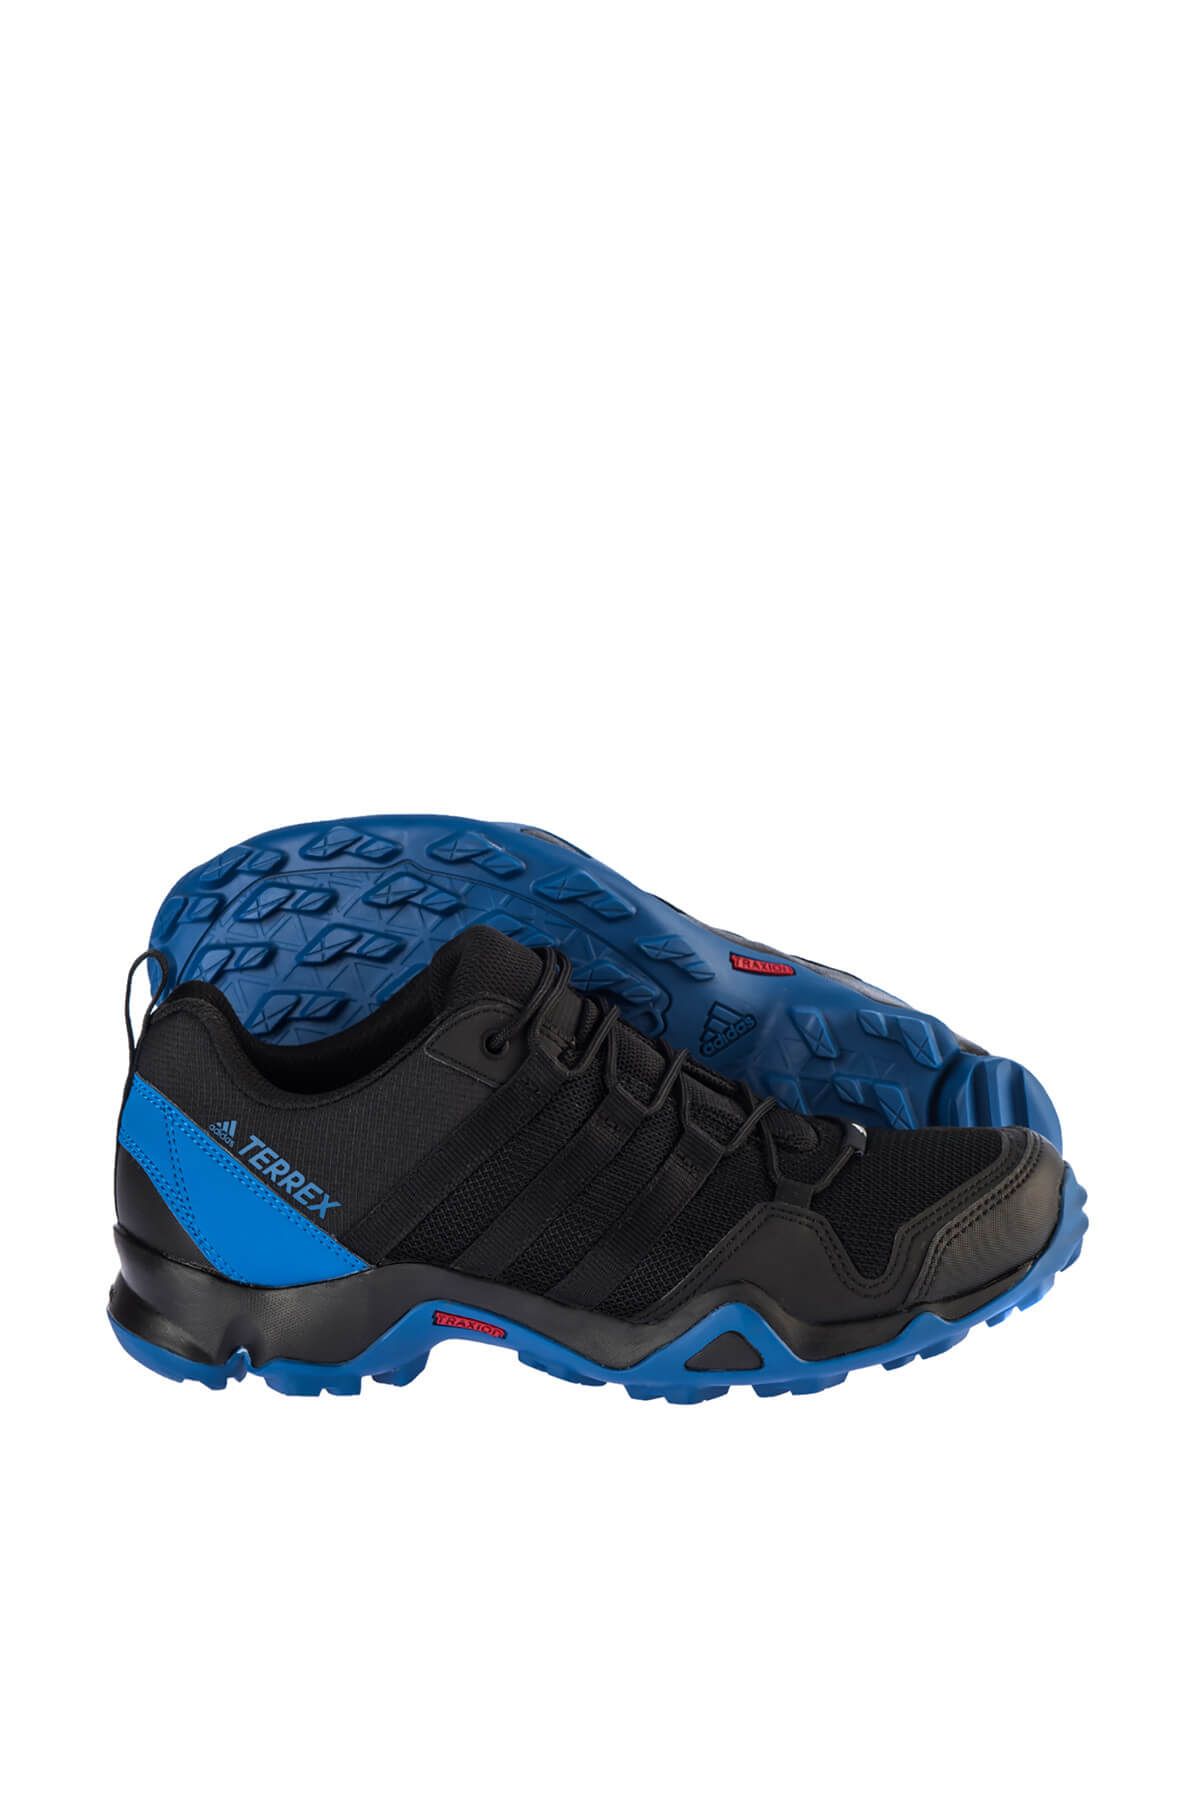 adidas Erkek Outdoor Ayakkabı - Terrex Ax2R  - CM7727